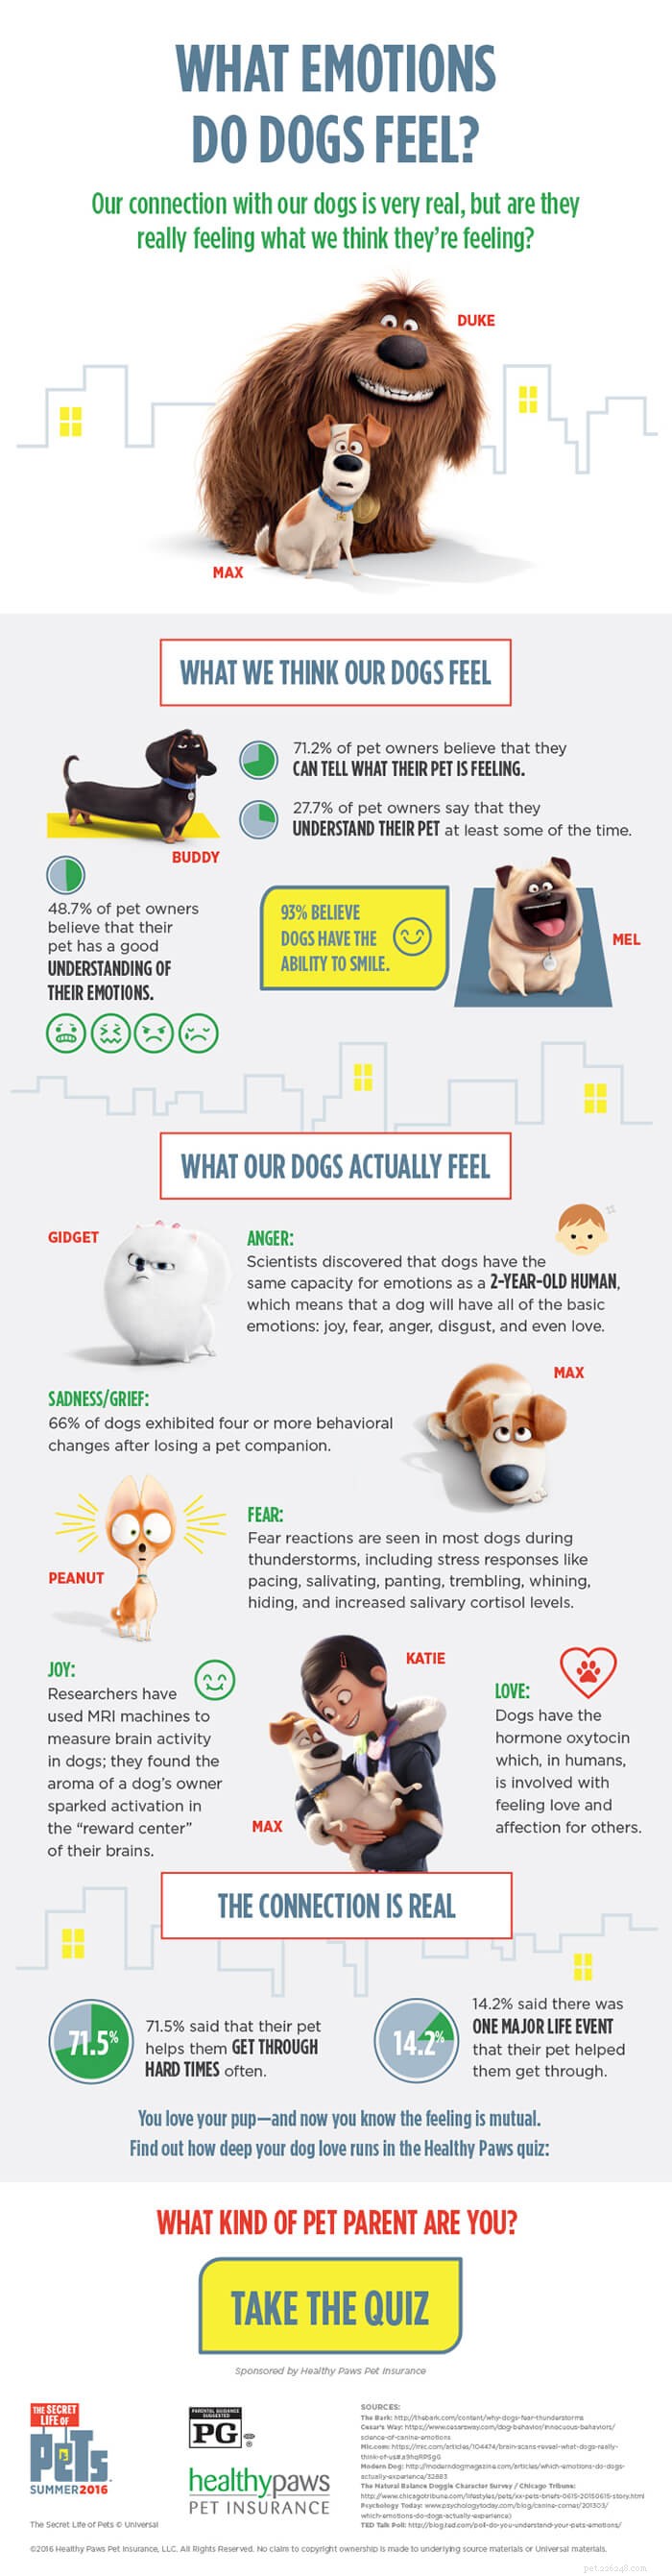 Welke emoties voelen honden? [Infographic]